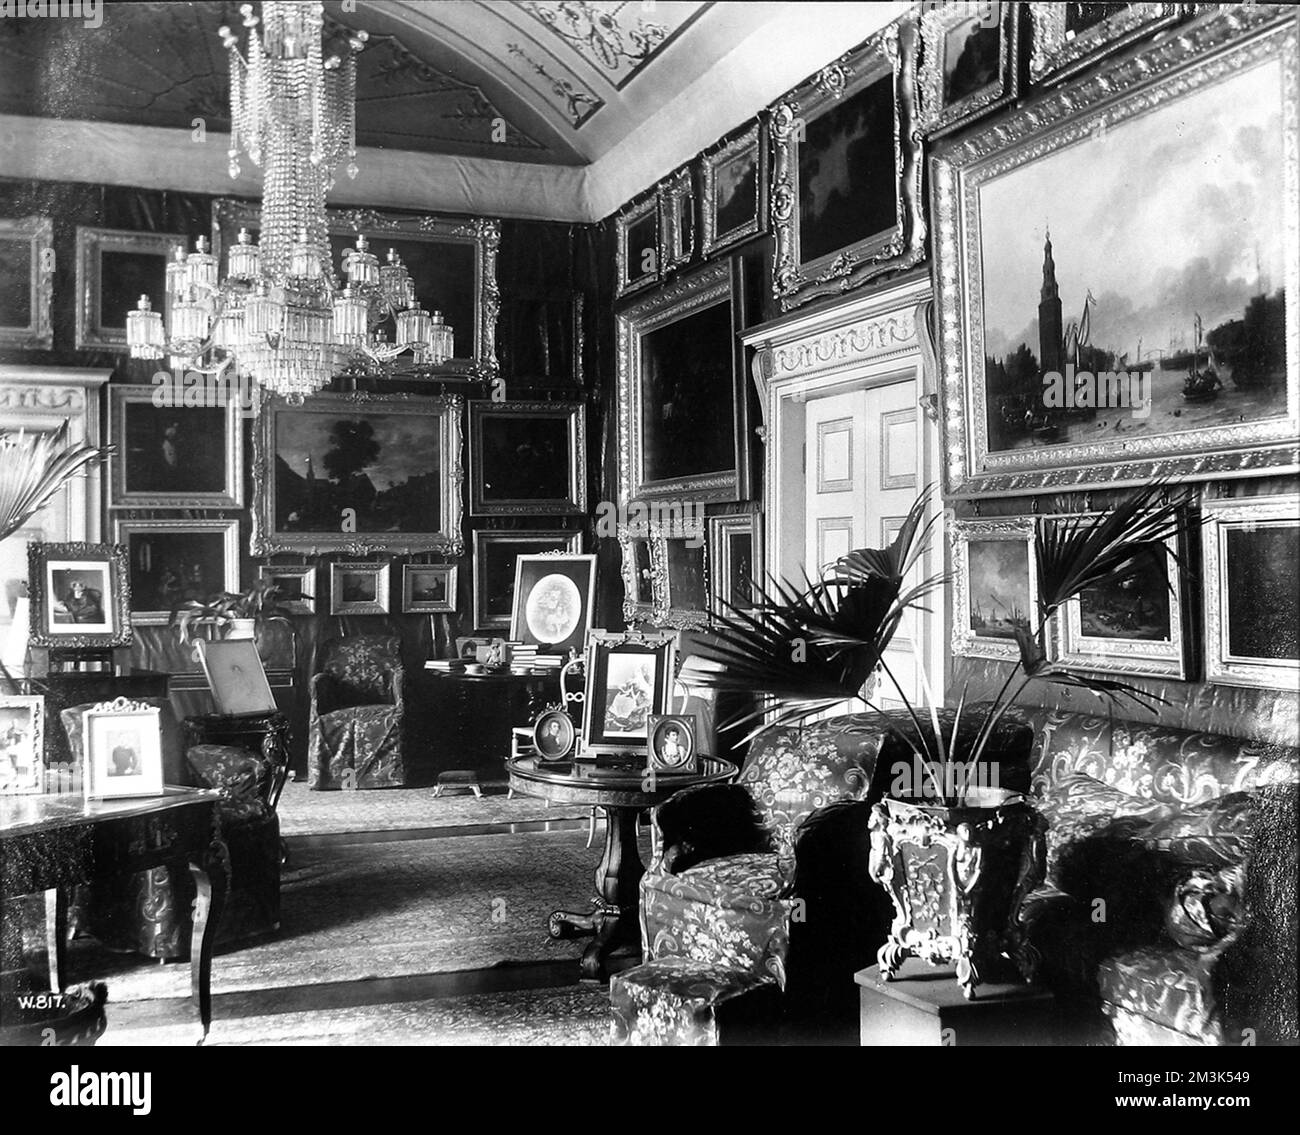 Foto eines der Salons im Apsley House, London, irgendwann im 19.. Jahrhundert. Apsley House war die Heimat des 1.. Herzogs von Wellington nach seinen berühmten Siegen in den Napoleonischen Kriegen. Datum: Ca. 19.. Jahrhundert Stockfoto